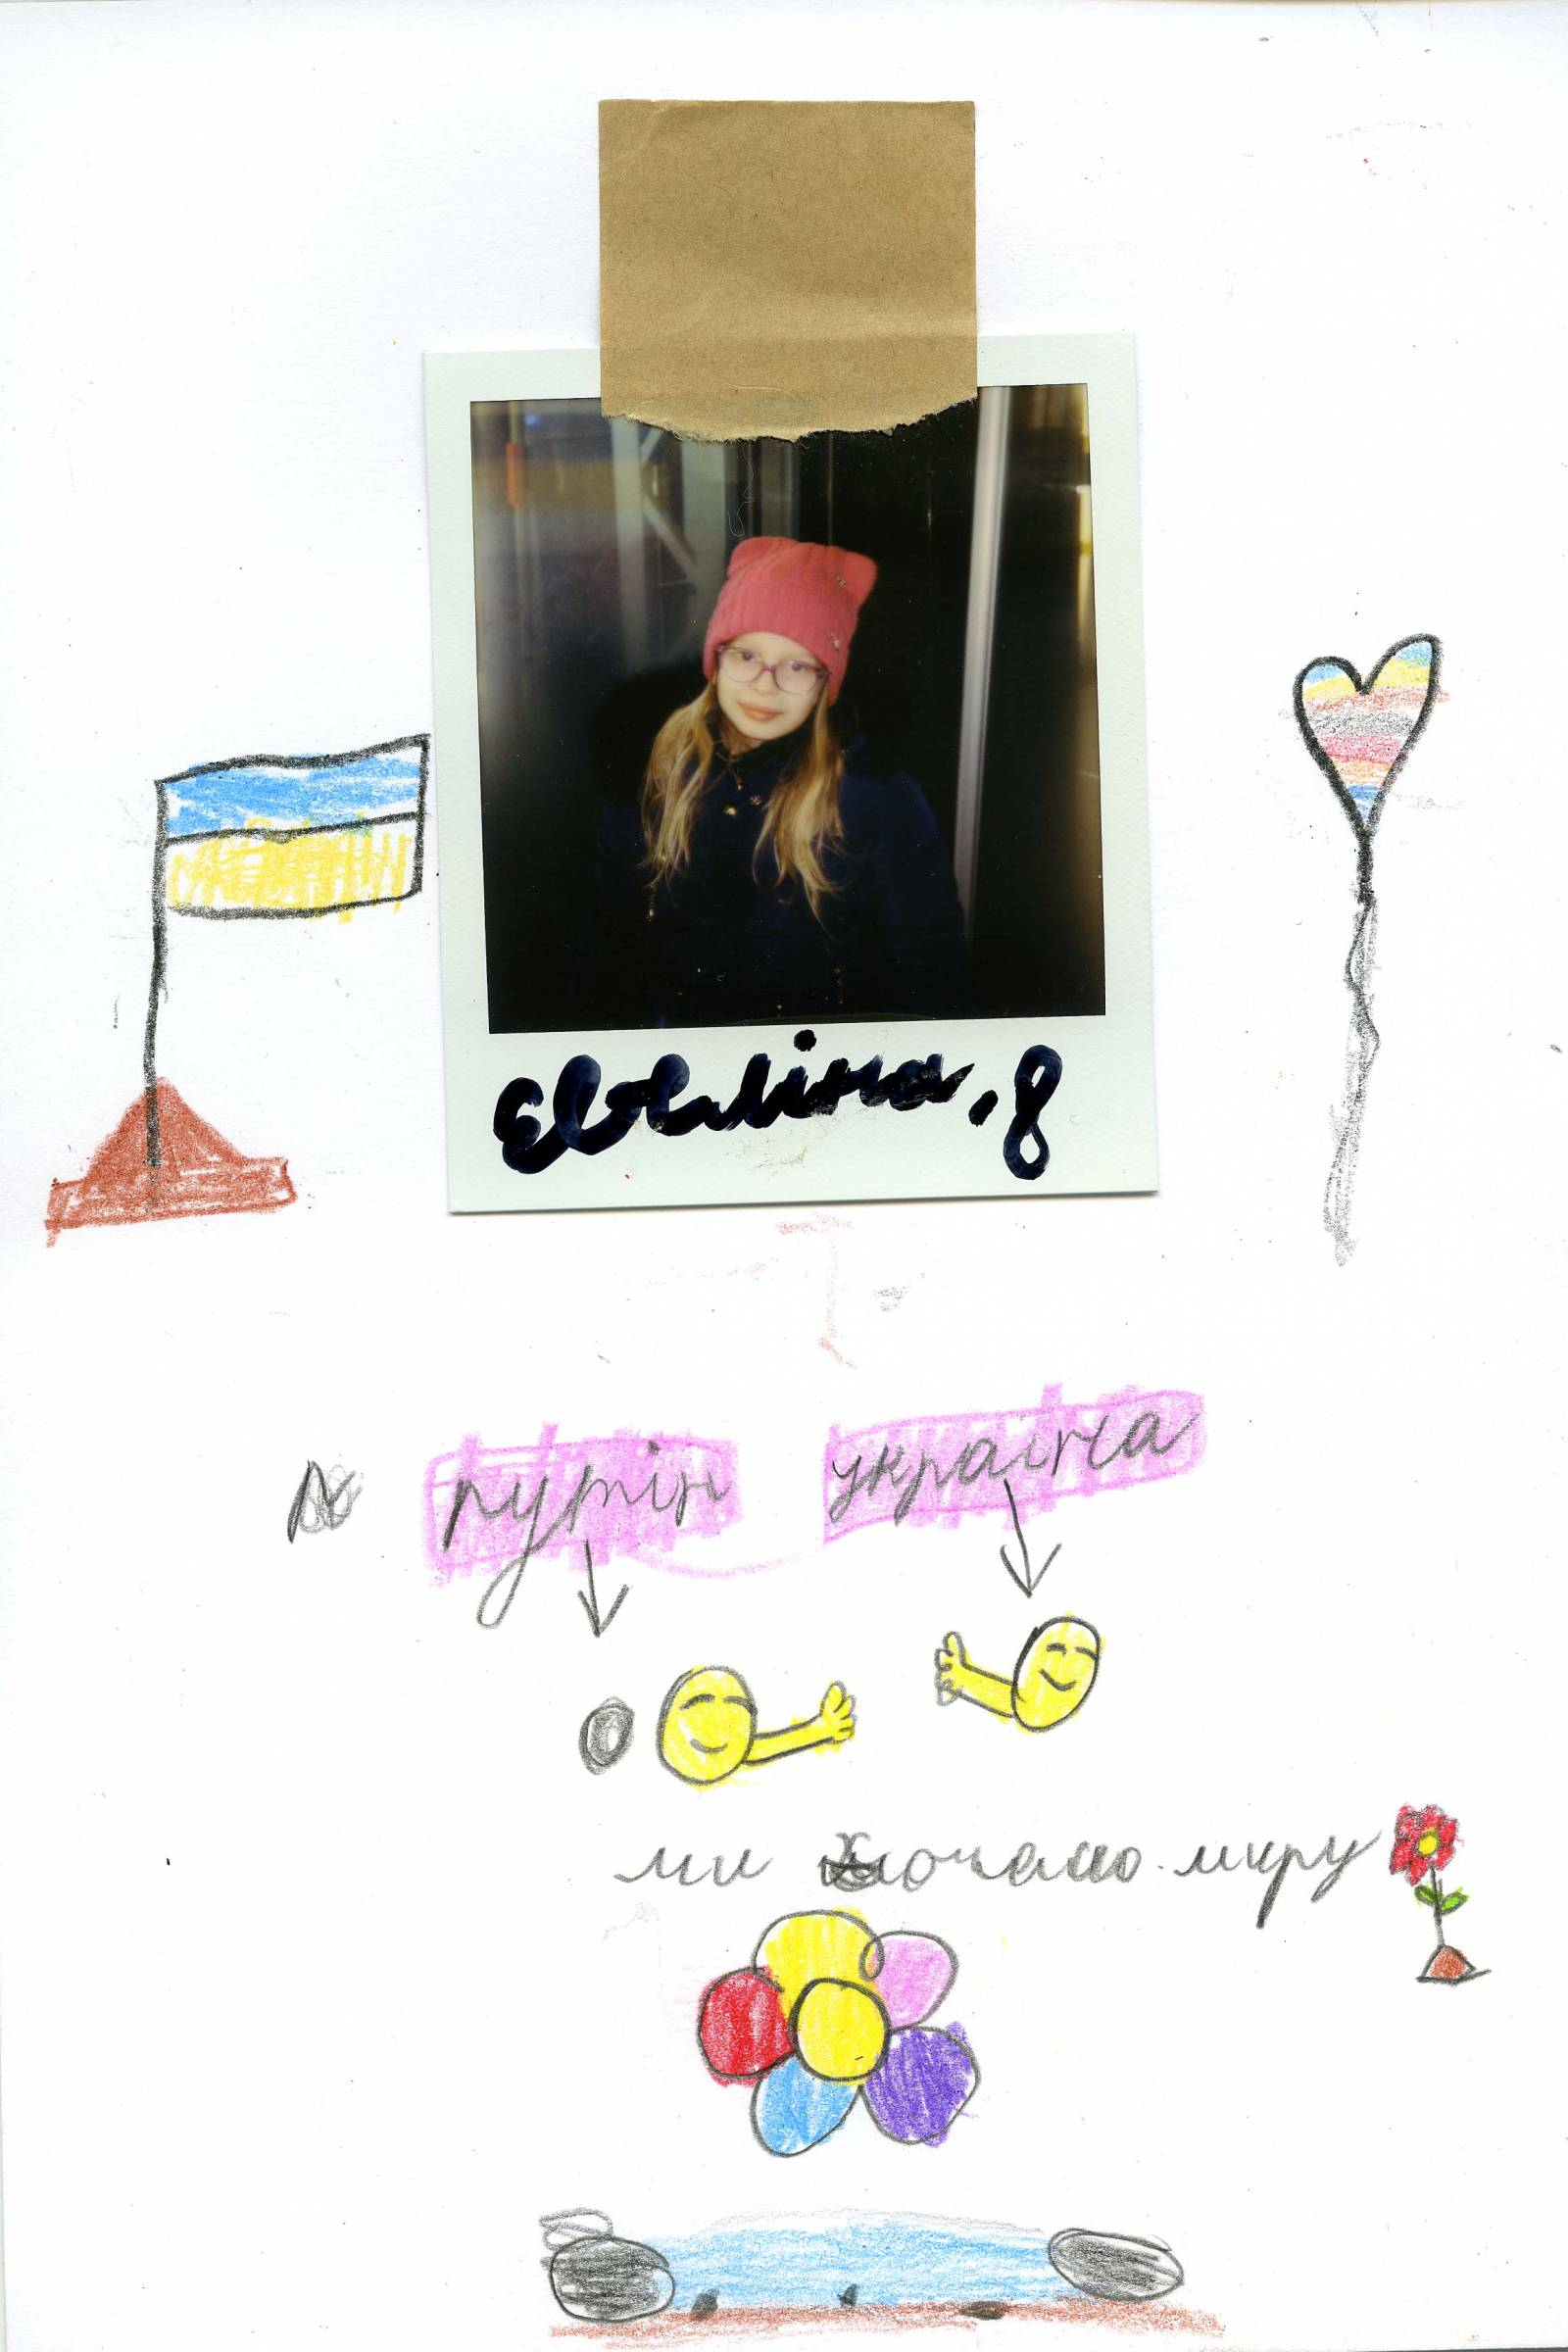 Евеліна, 8 ,,Chcę pokoju. (Uśmiechnięte twarze podpisane są jako Putin i Ukraina).”